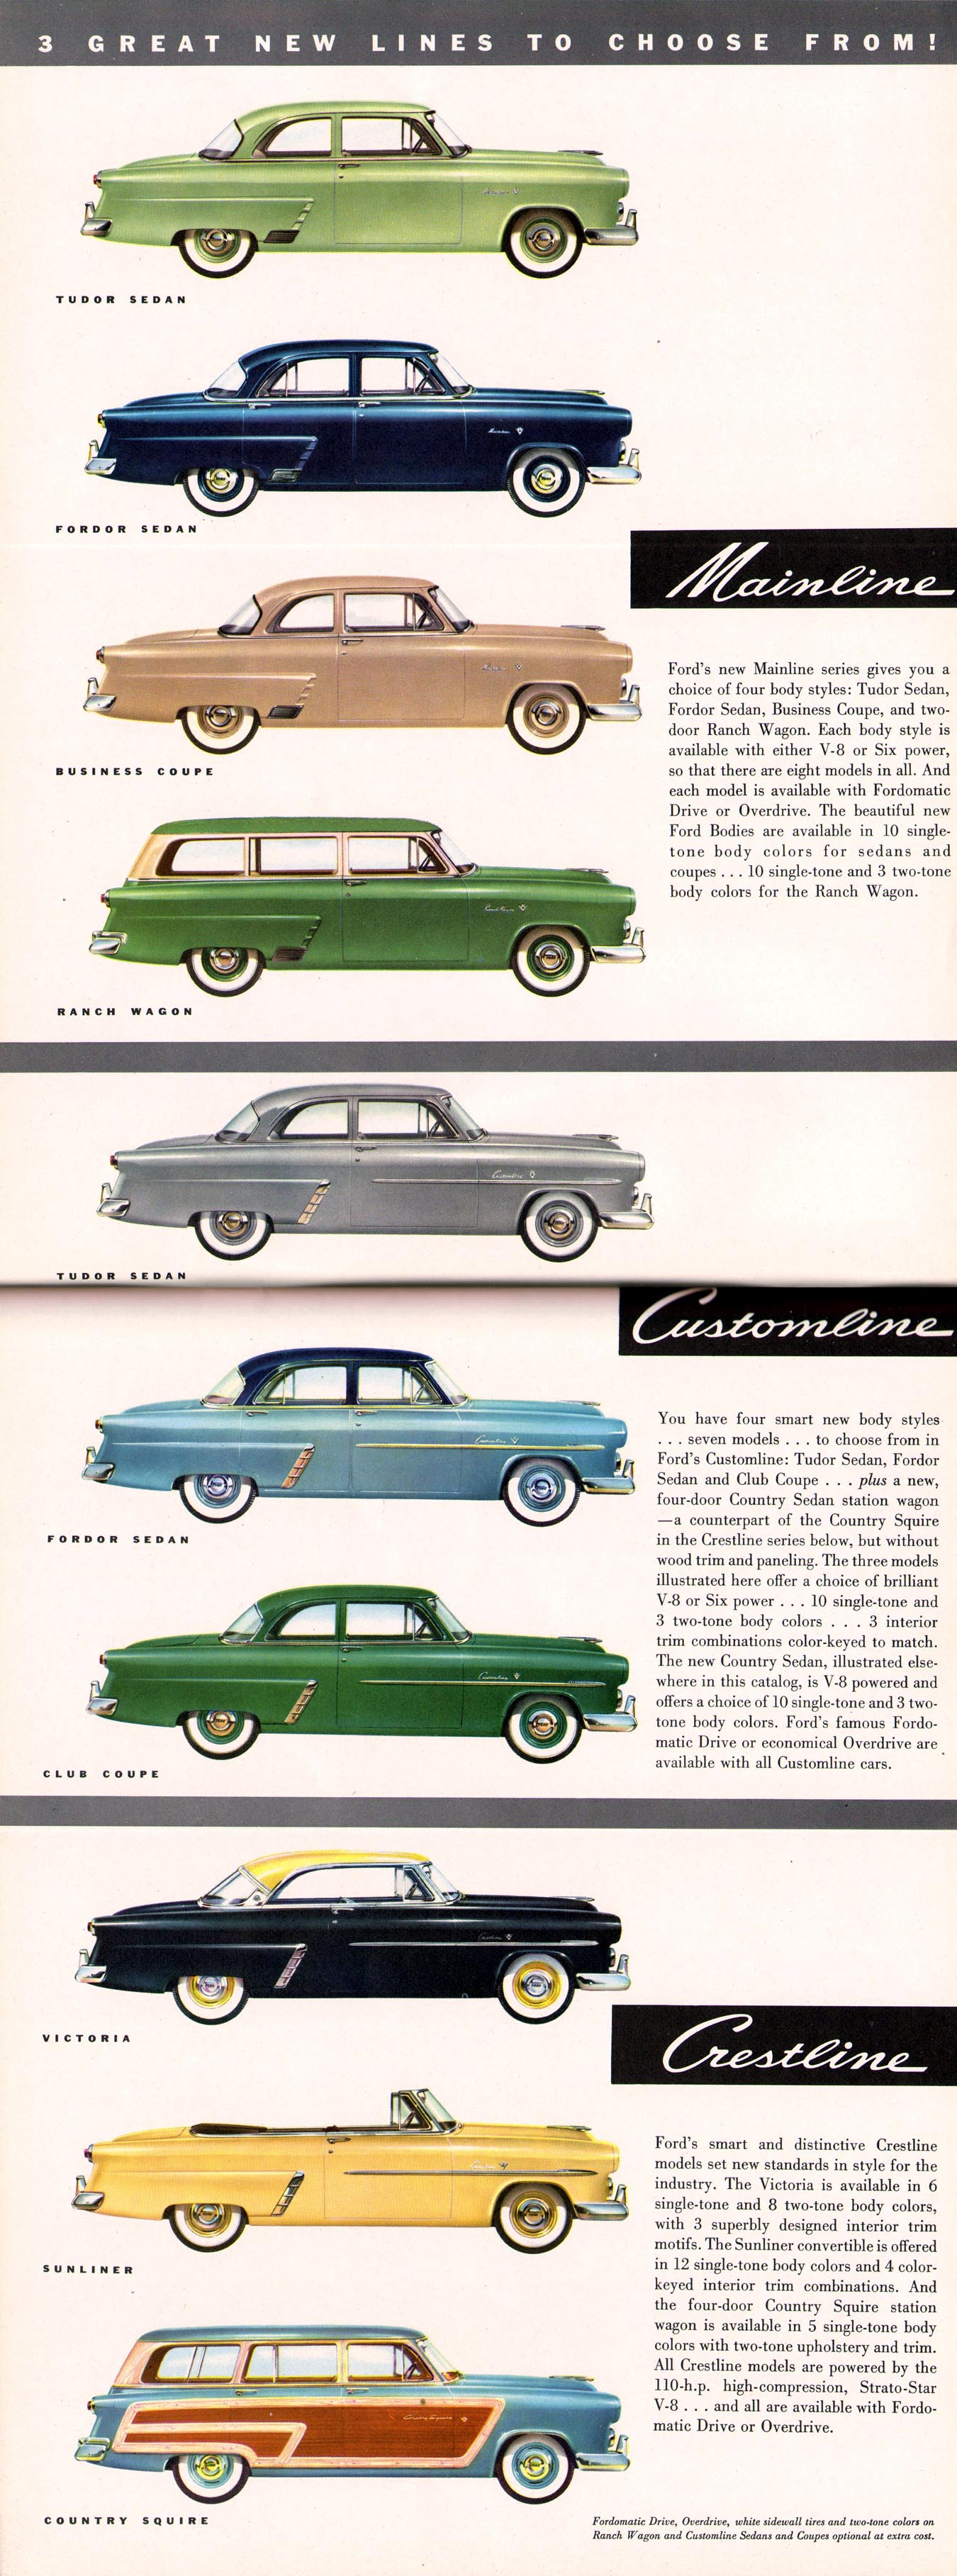 1952_Ford_Full_Line_Rev-04-05